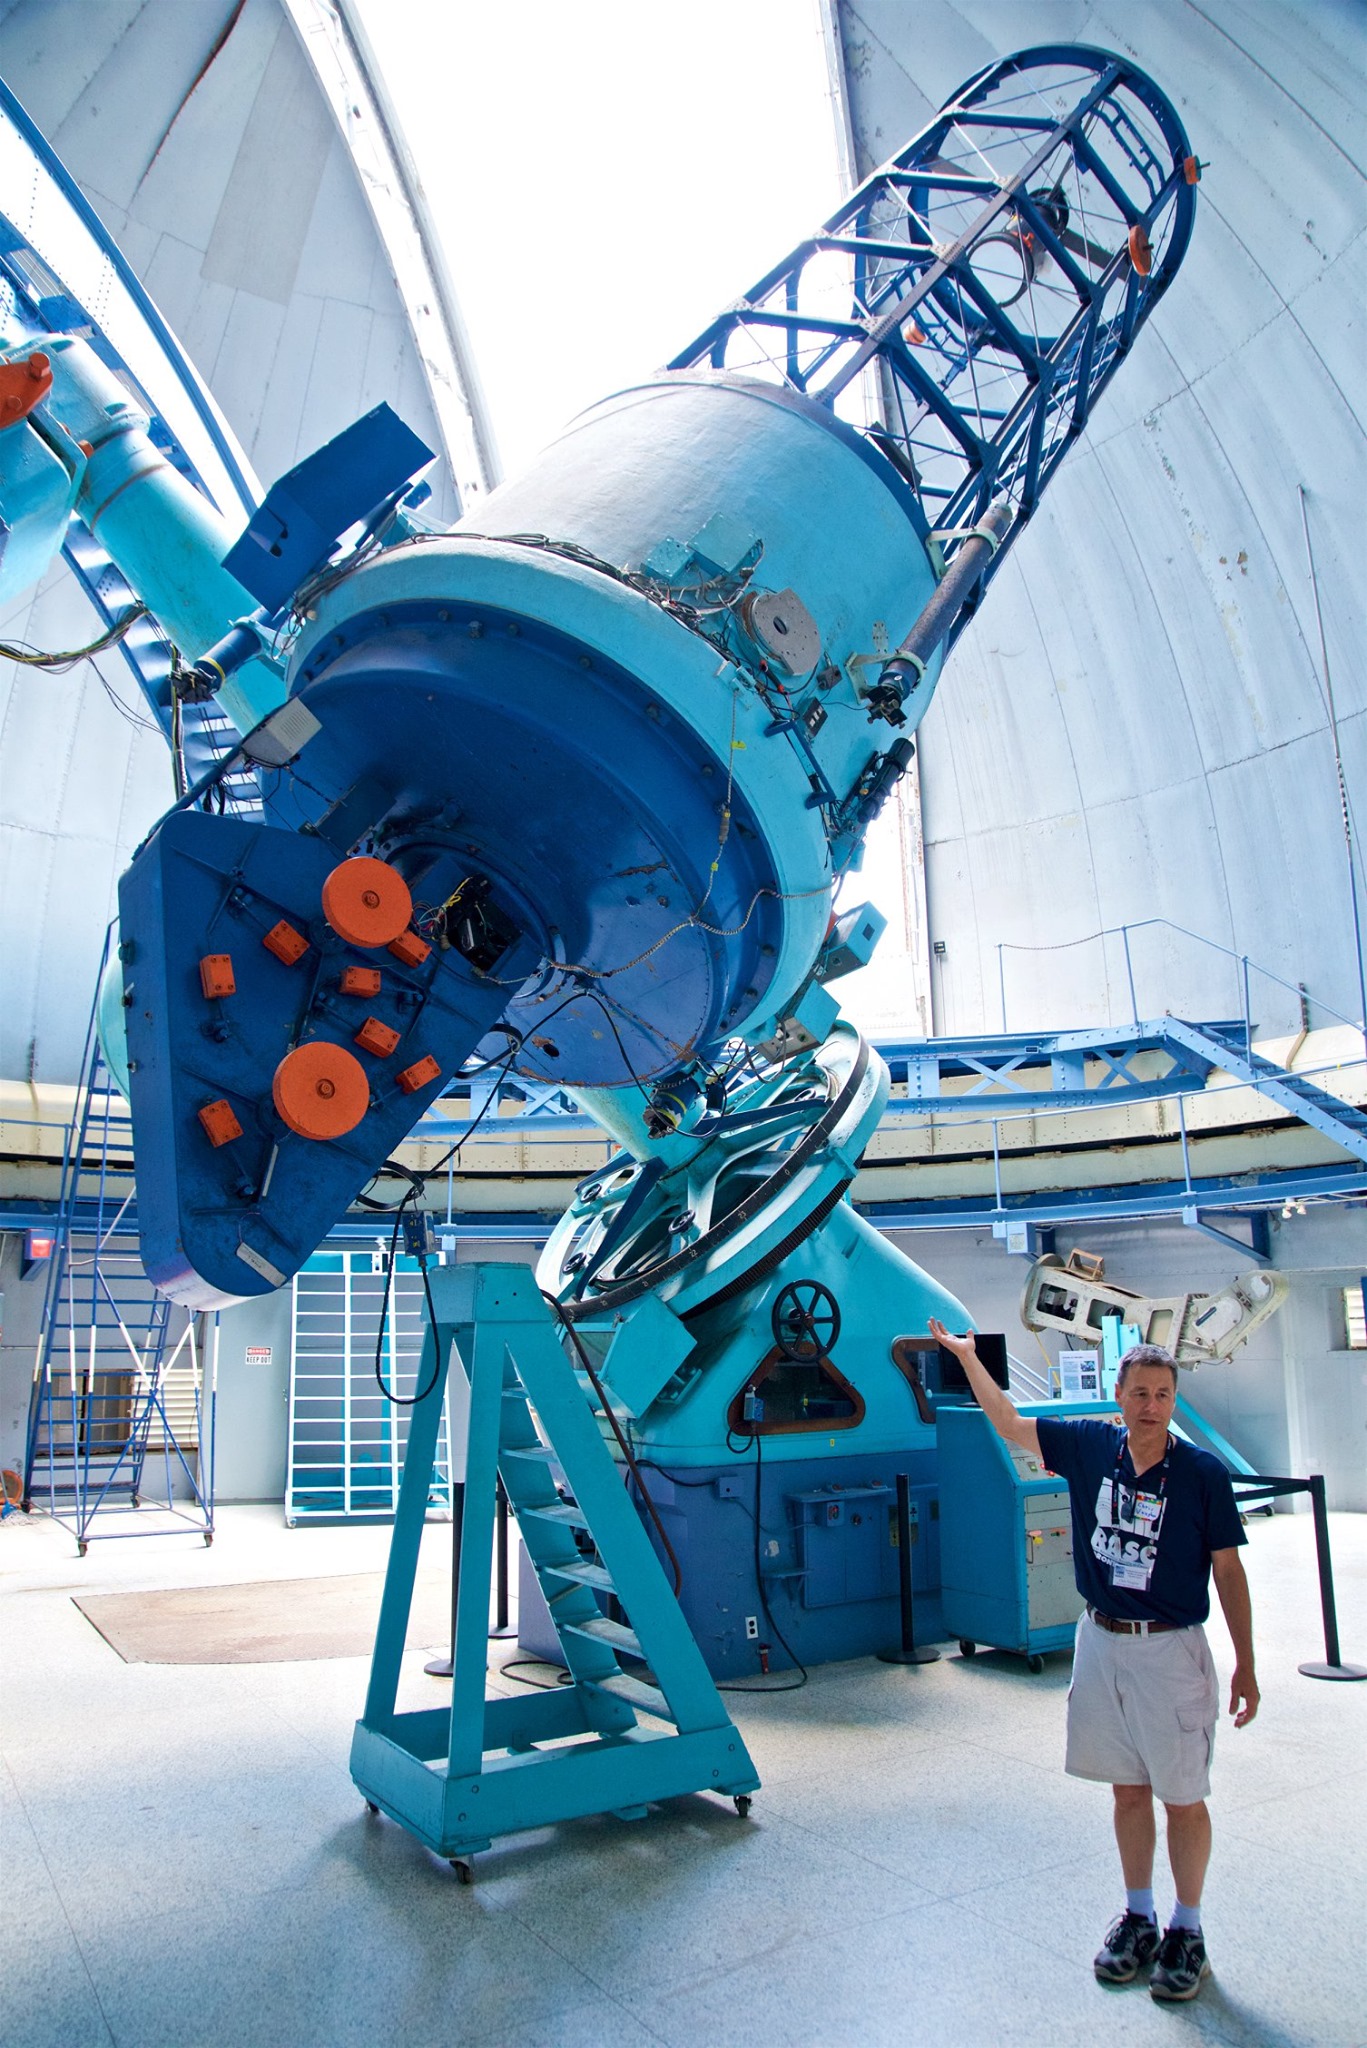 74 inch telescope demo